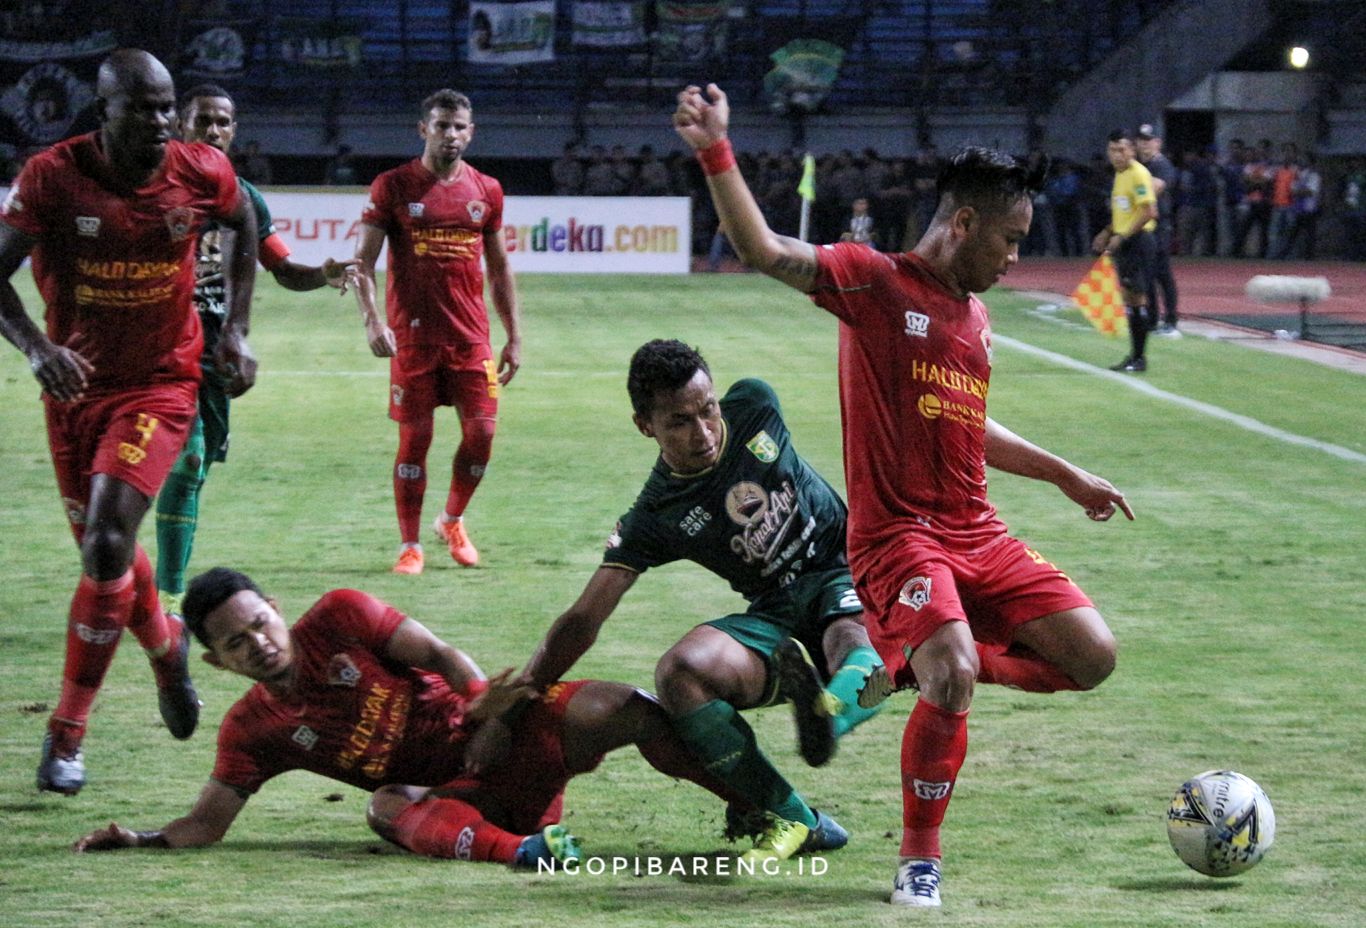 Pertemuan Persebaya vs Kalteng Putra di putaran pertama Liga 1 kemarin berakhir seri dengan skor 1-1. (Foto: Haris/ngopibareng.id)